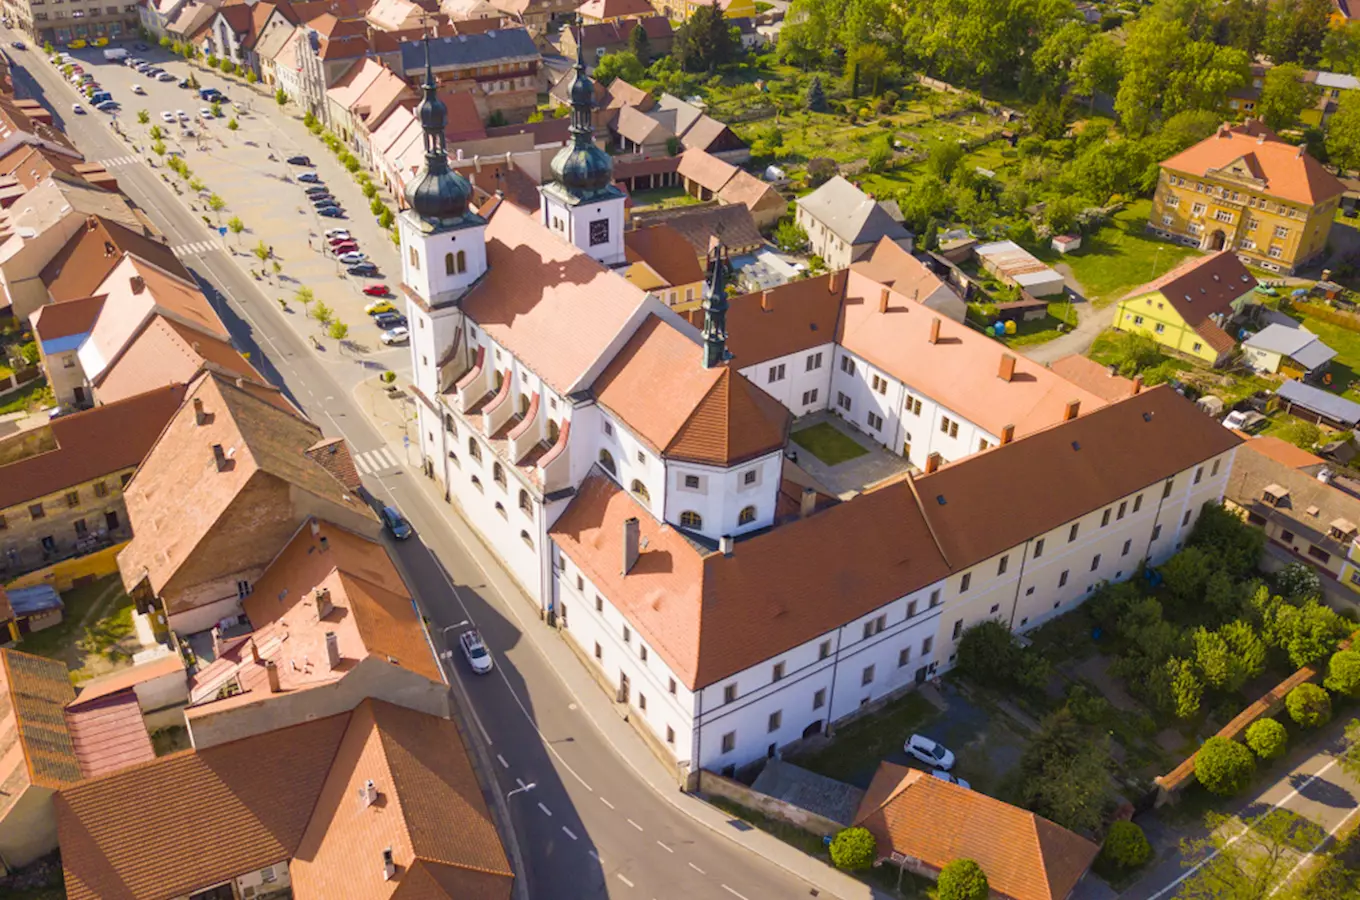 Adventní oživené prohlídky zámku Březnice